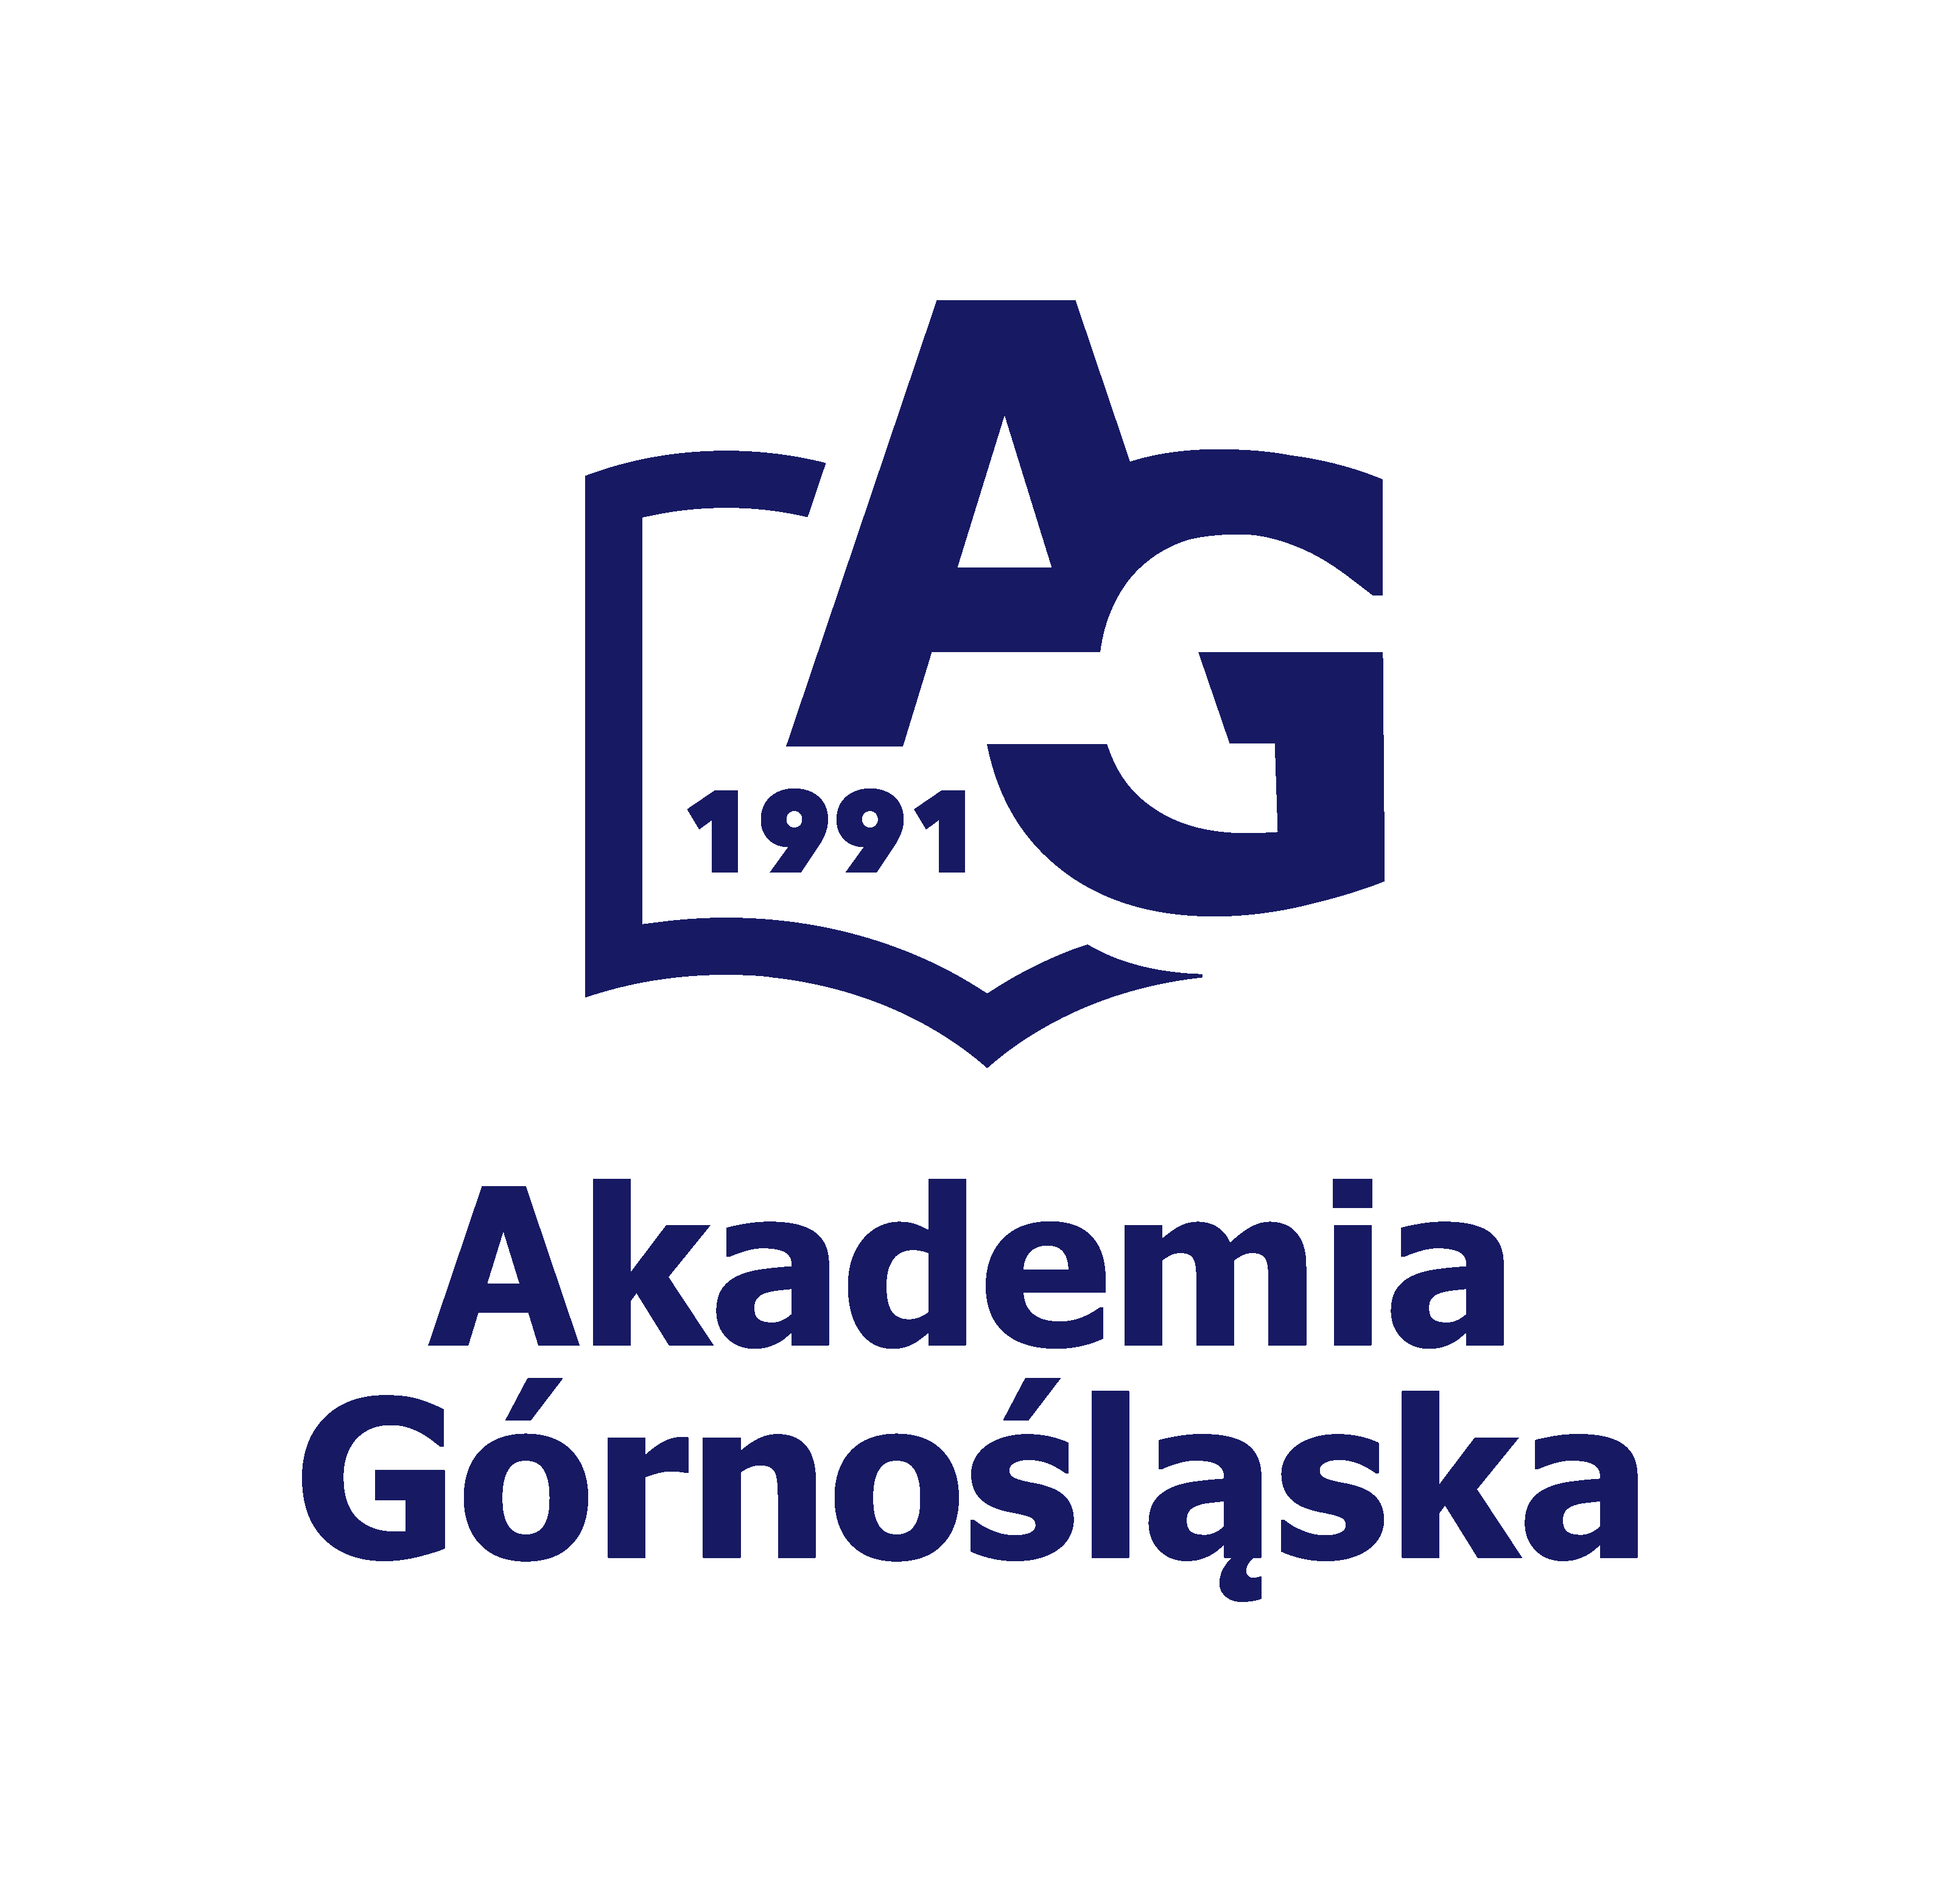 Logo Akademia Górnośląska im. Wojciecha Korfantego w Katowicach